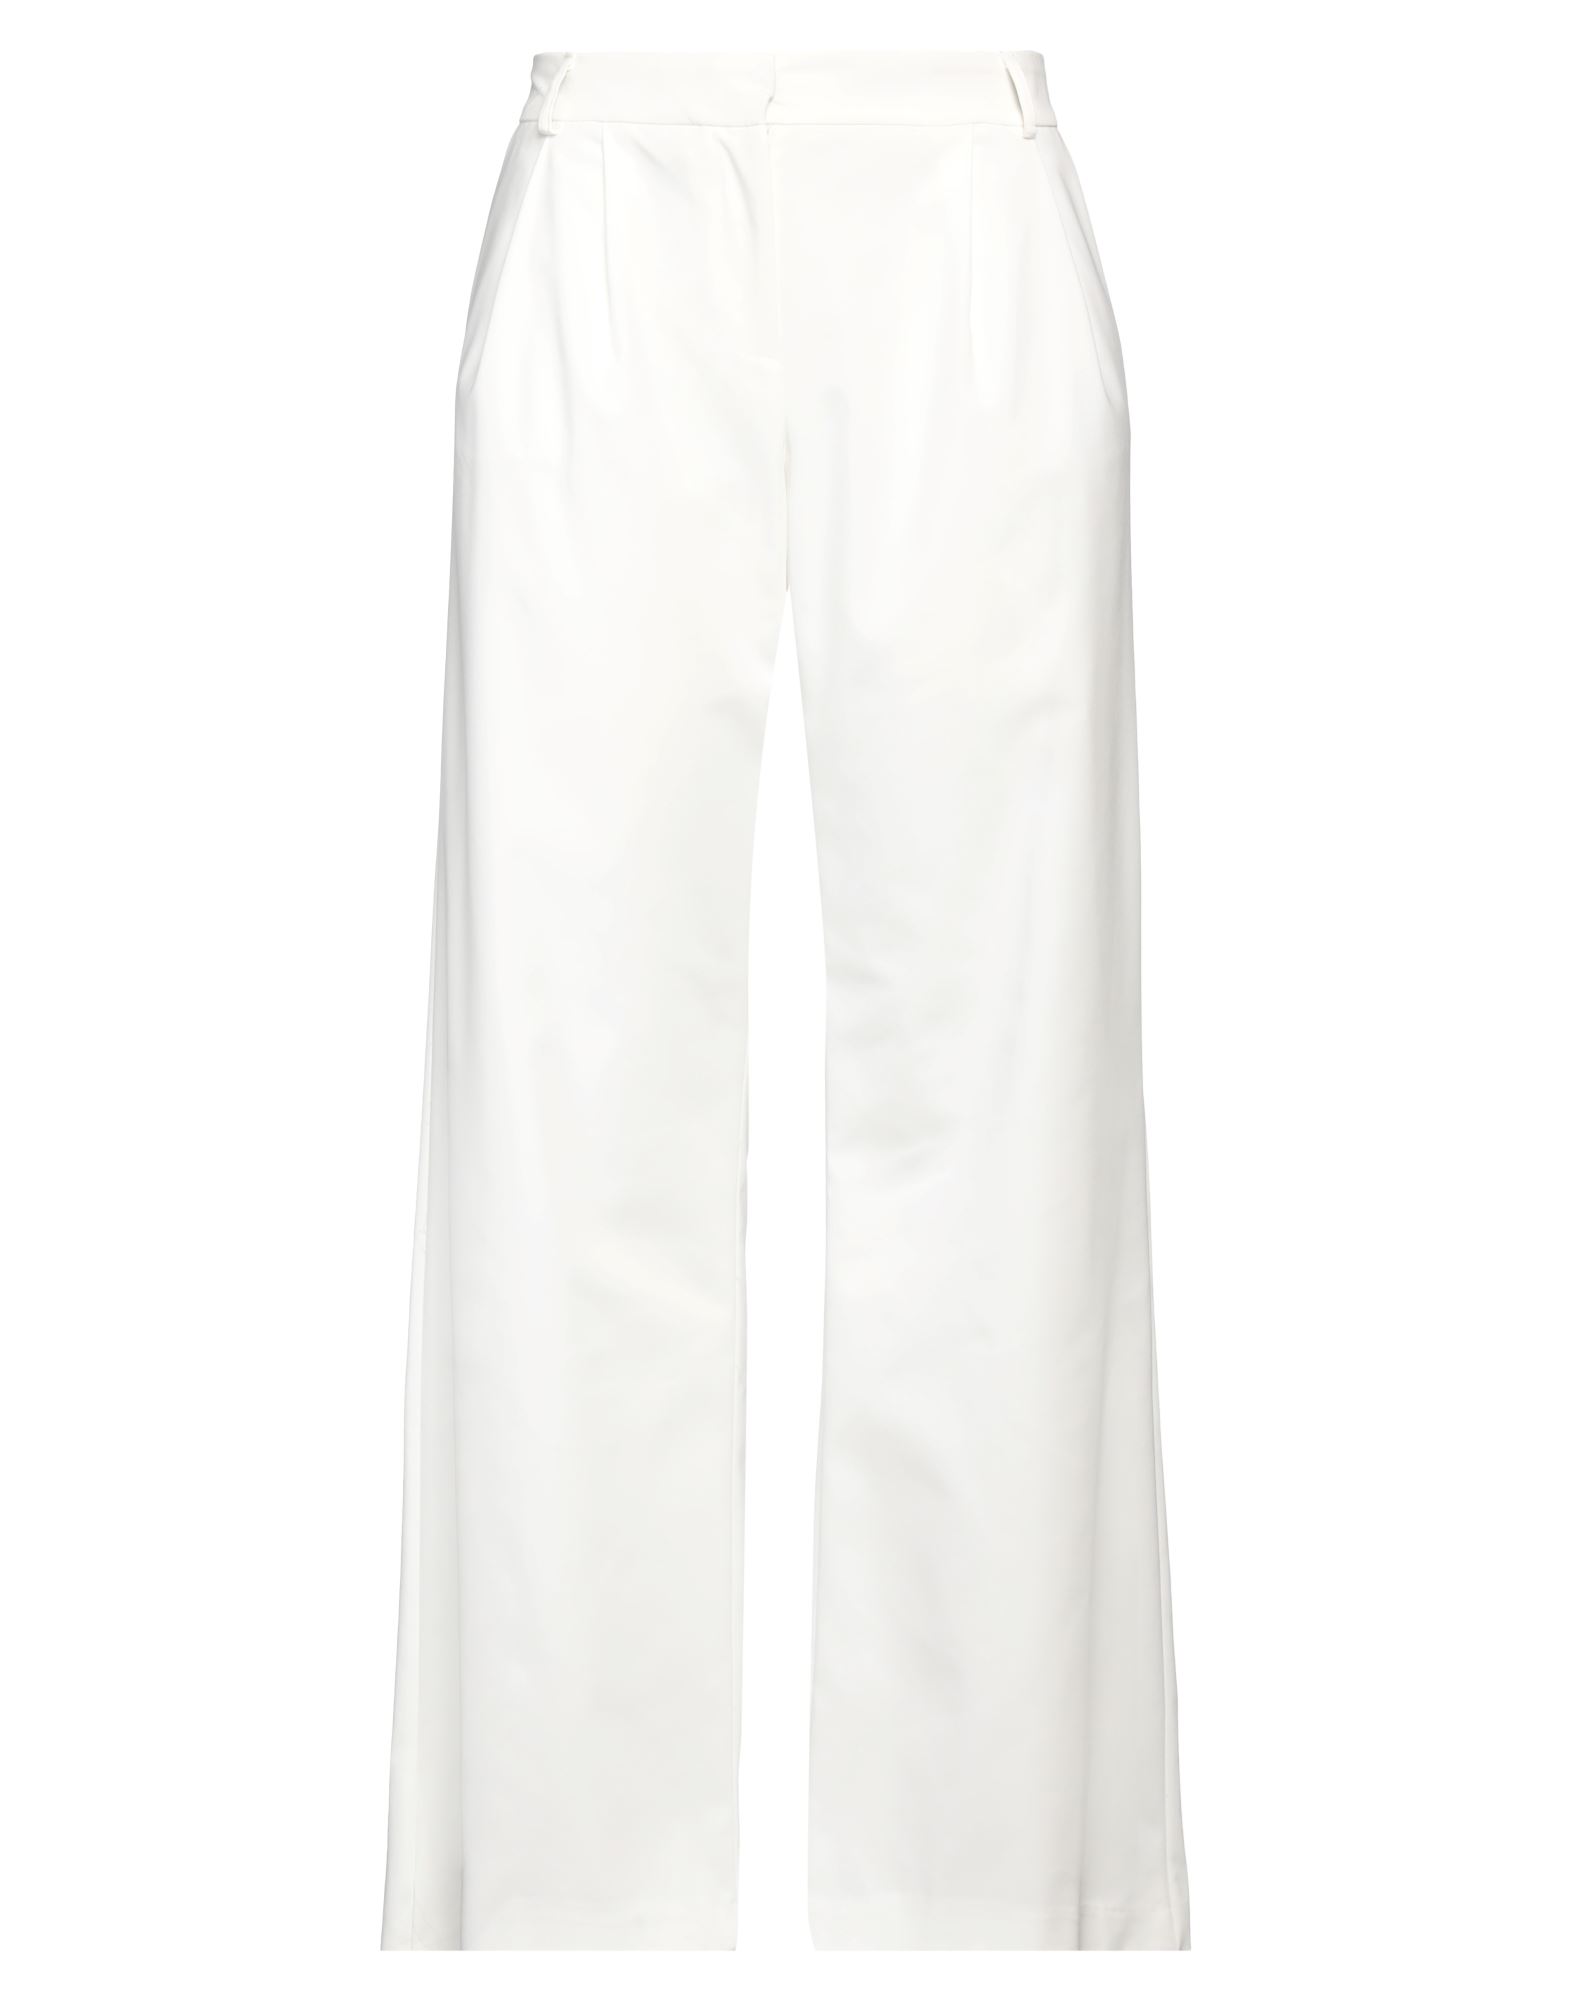 Shop Aniye By Woman Pants White Size M Cotton, Polyester, Elastane